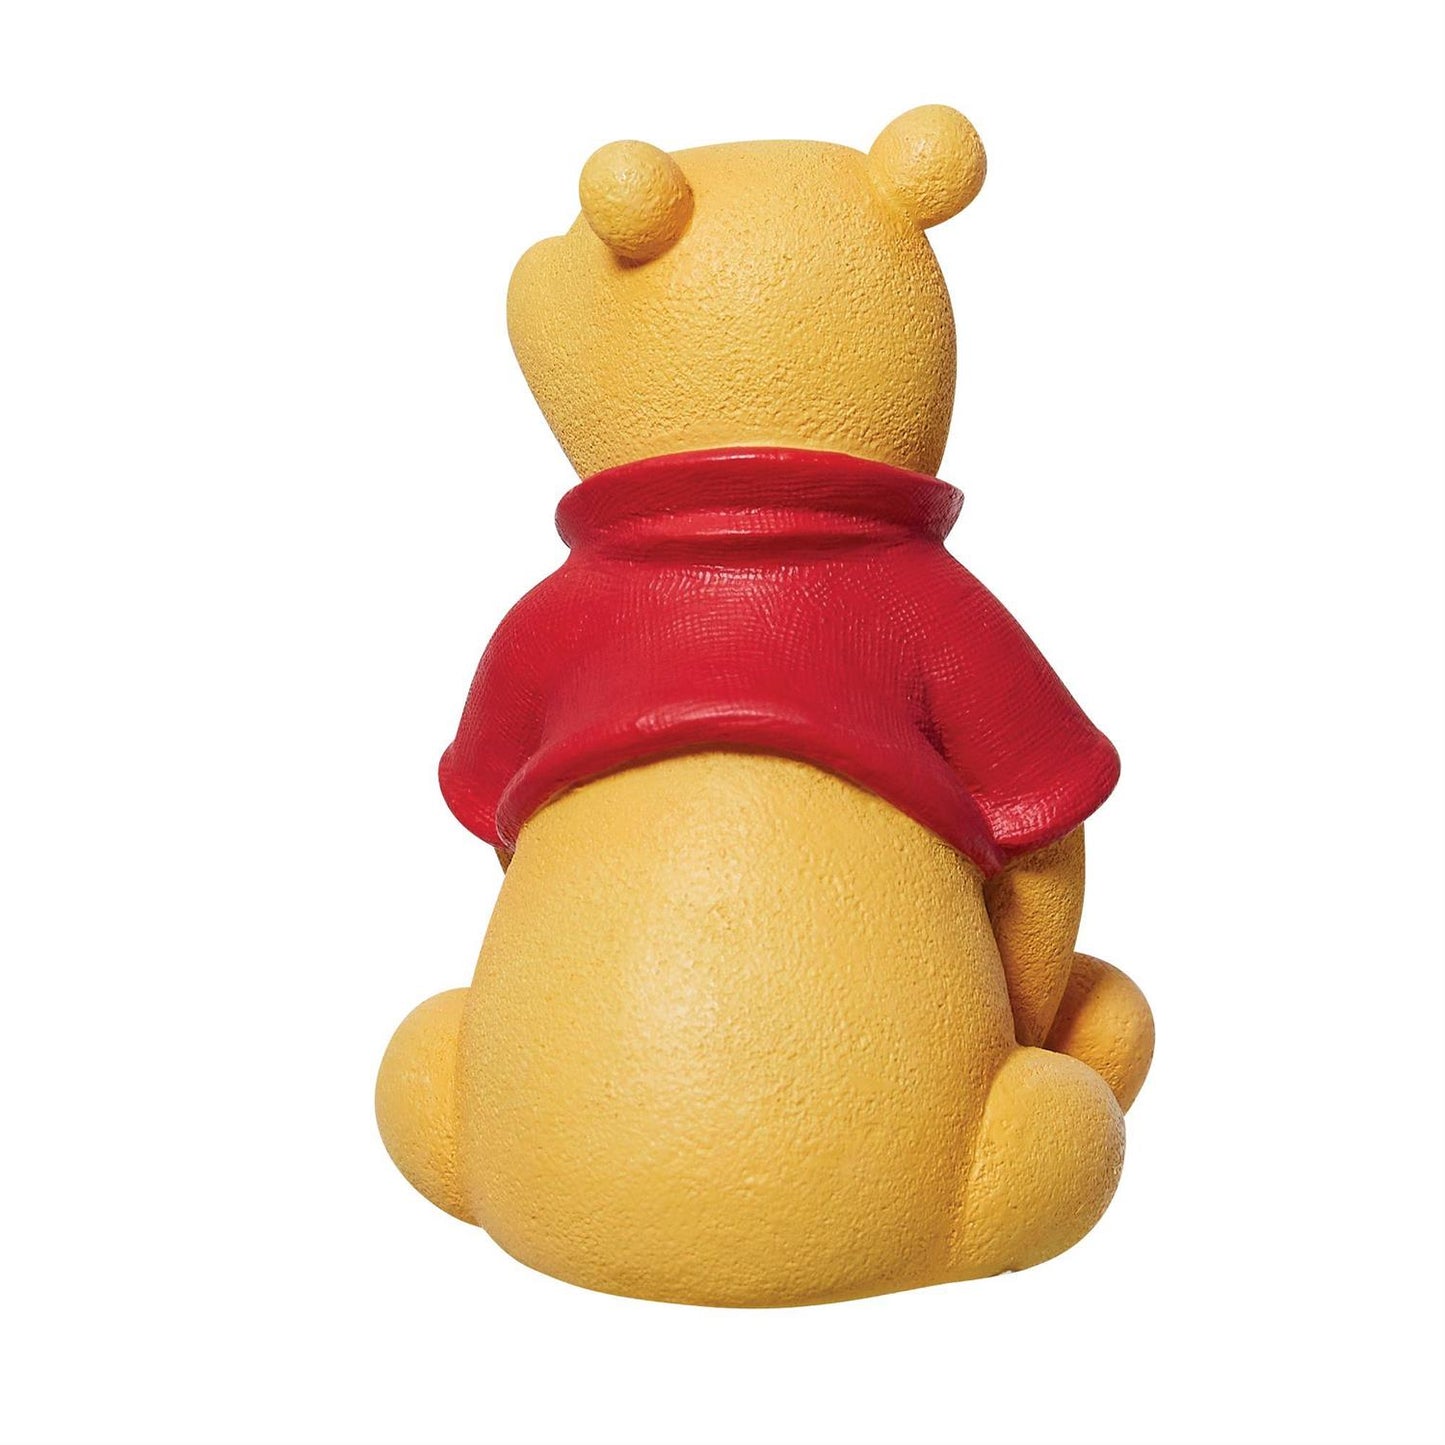 Winnie the Pooh Mini Figurine